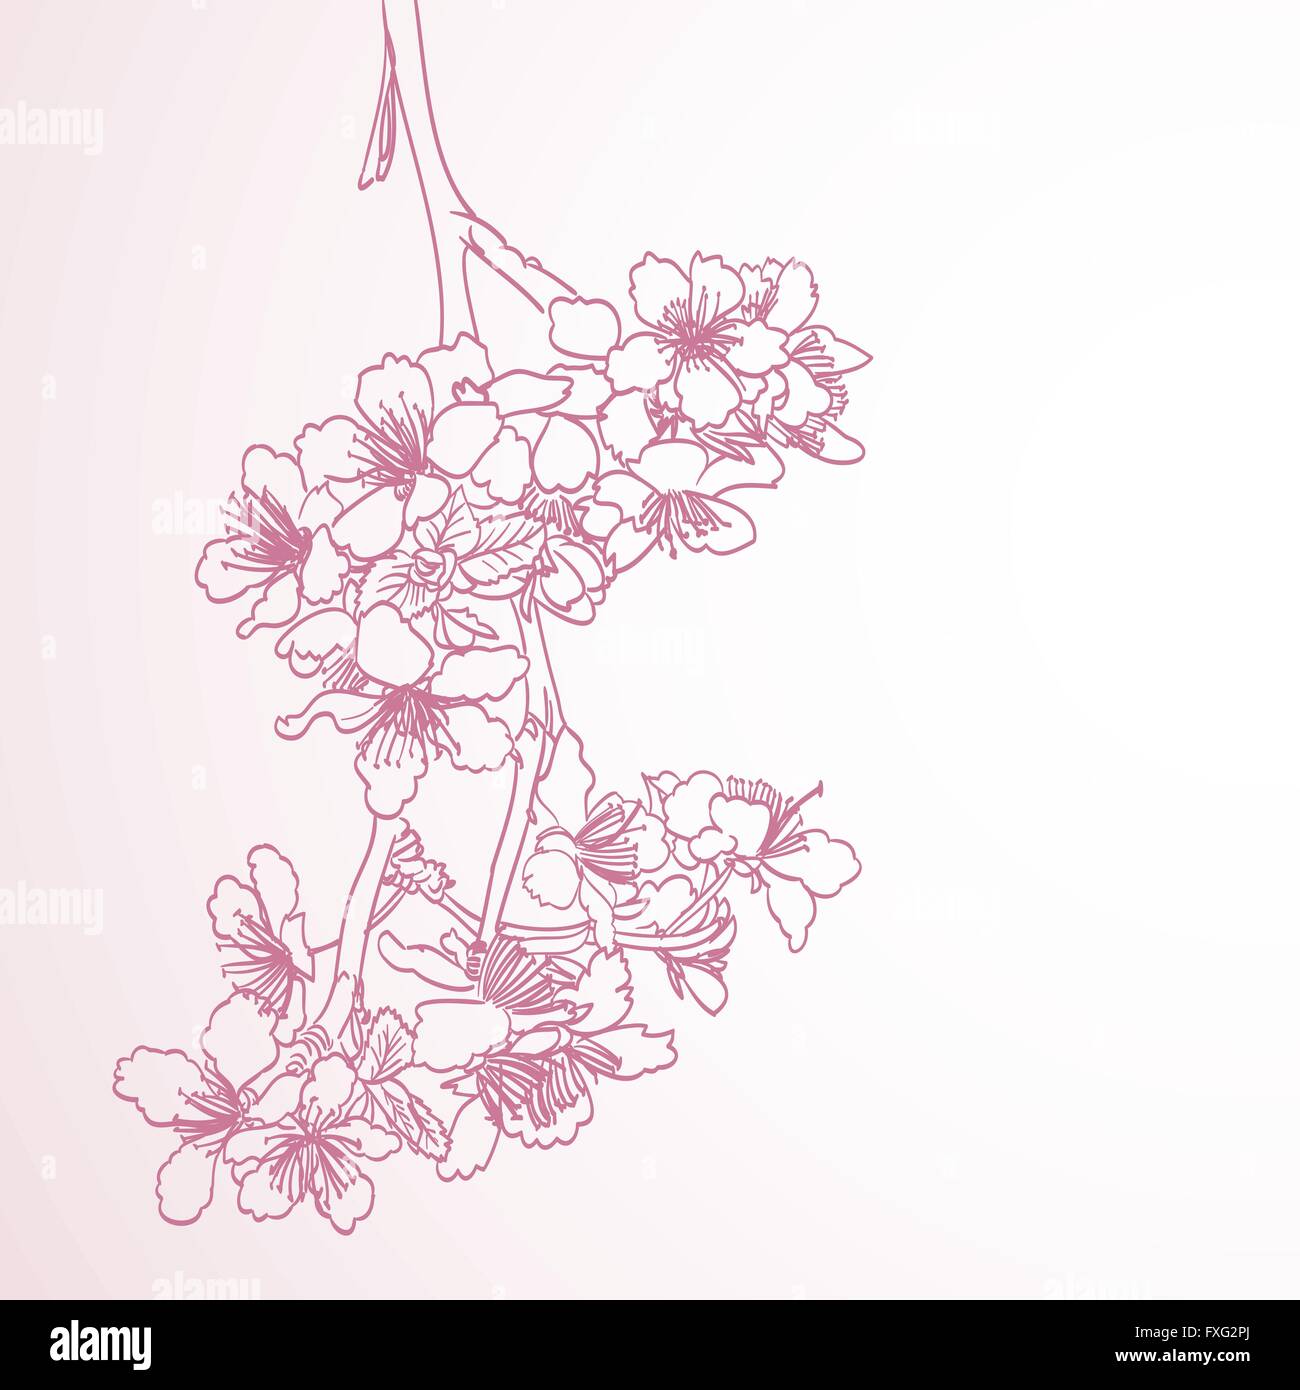 La ligne d'arbres en fleurs dessin à la main d'art illustration. printemps fond horizontal élégant avec des fleurs de prune rose vector Illustration de Vecteur